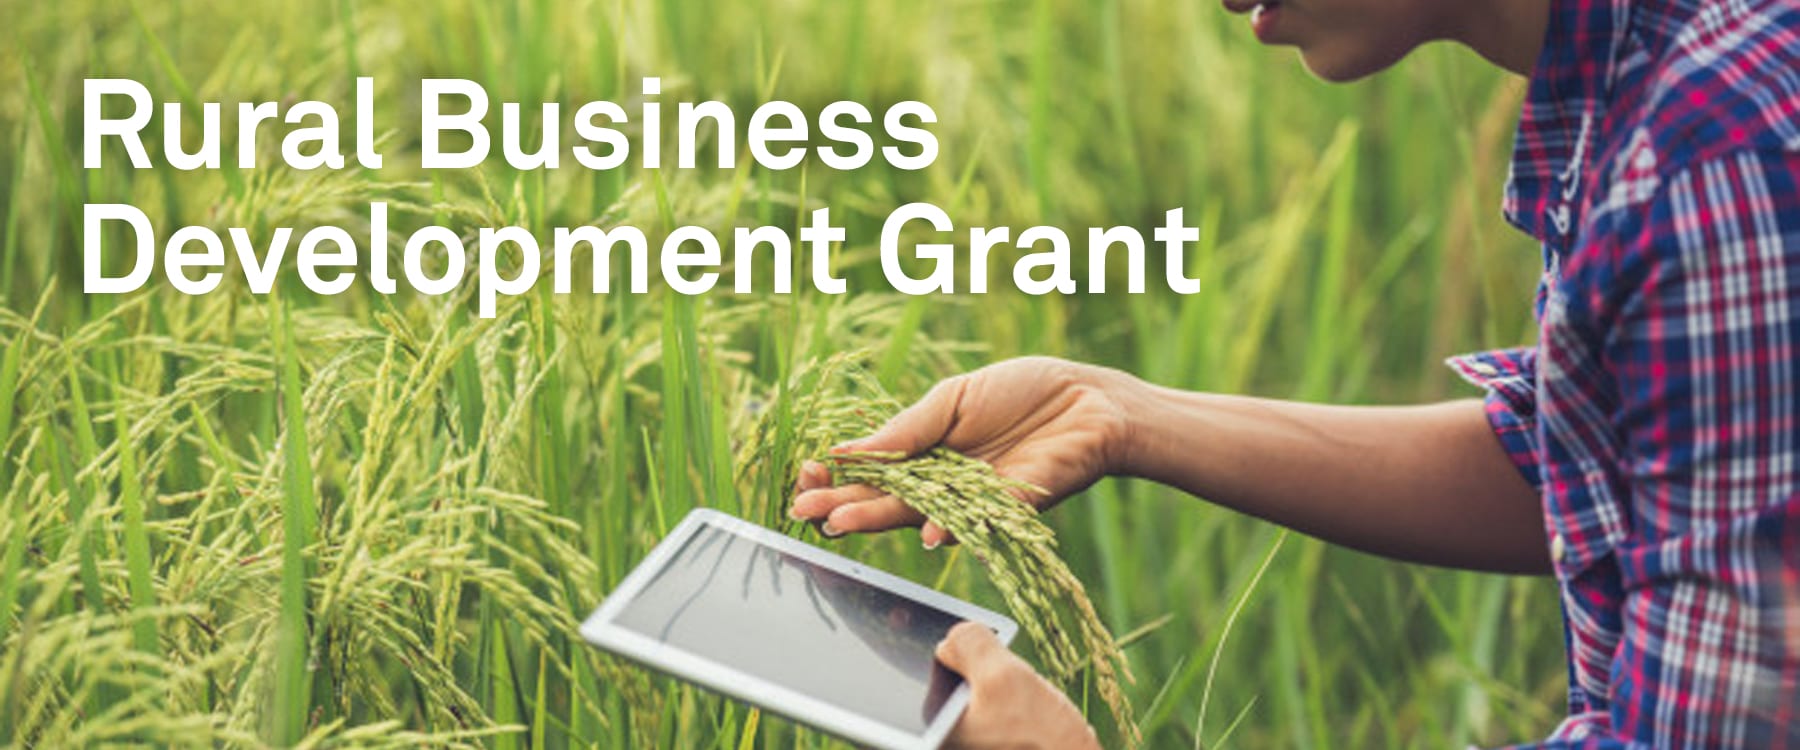 Rural Business Development Grant Scheme